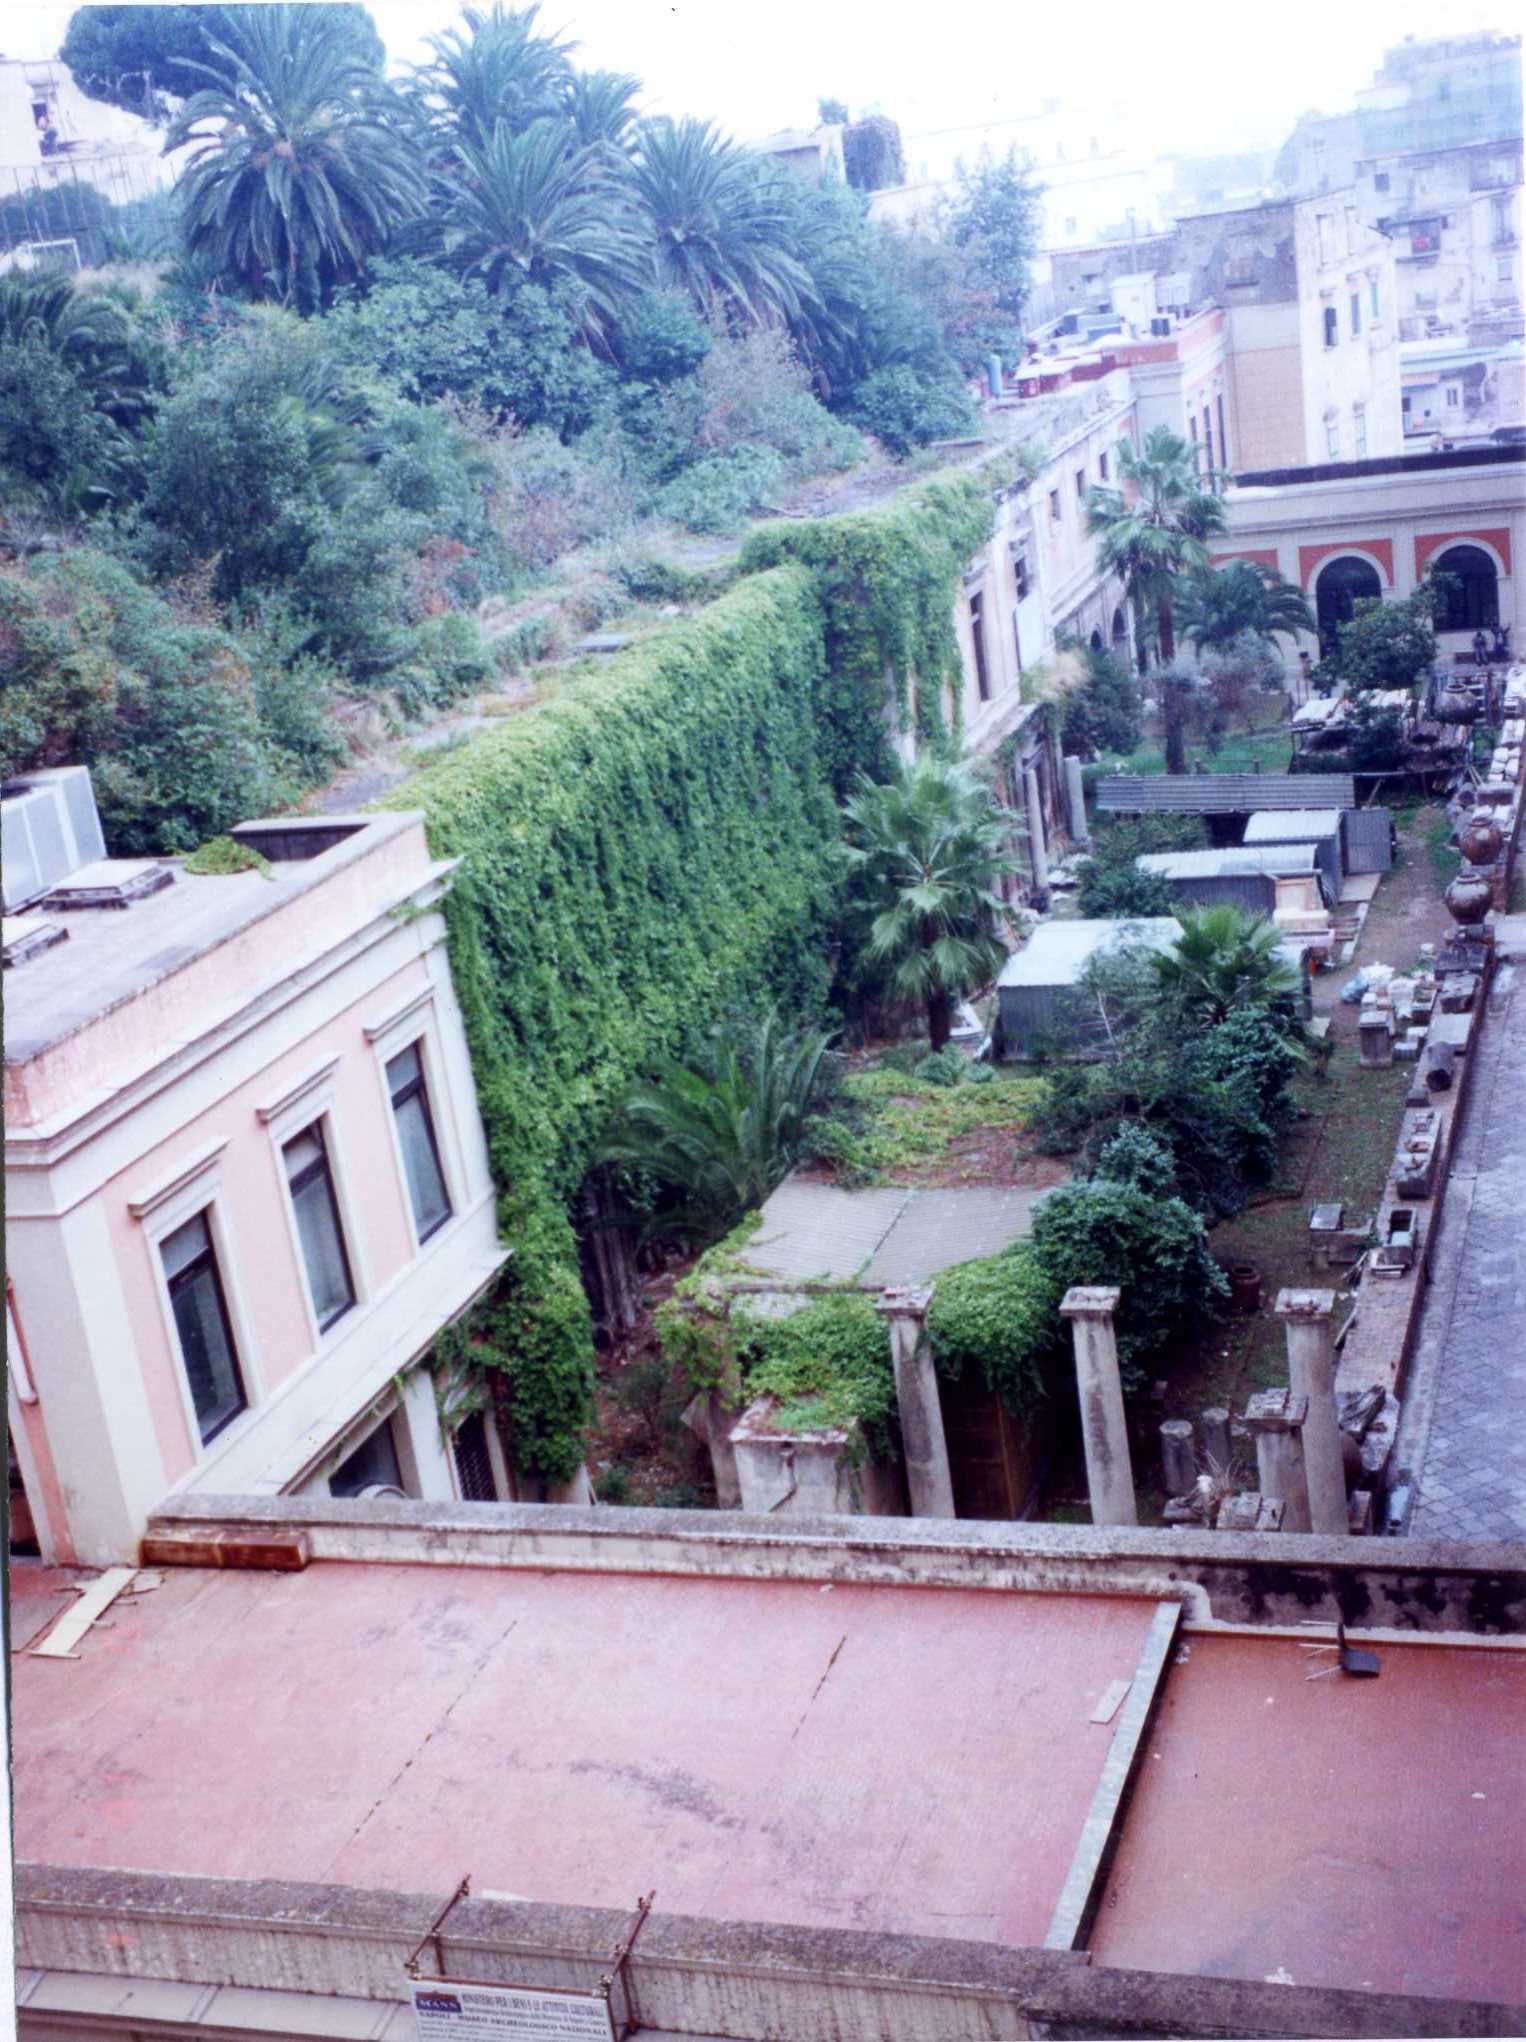 MANN - Braccio Nuovo ampliamento (museo, archeologico) - Napoli (NA) 